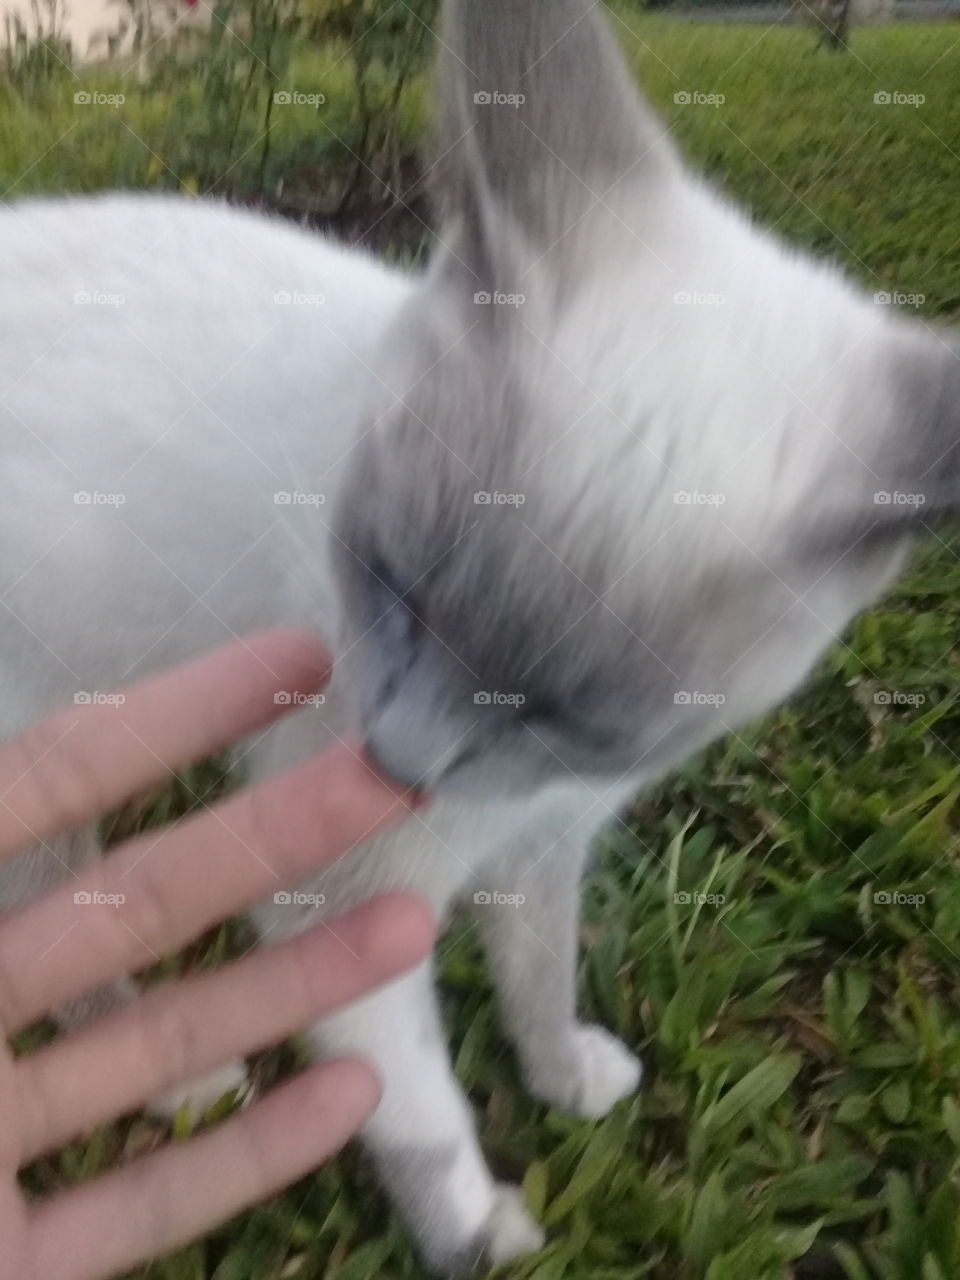 mi gata, Dukesa, blanco y gris es su pelaje de vestir.  Cariñosa y un poco loca. Le gusta dormir en una alfombra.